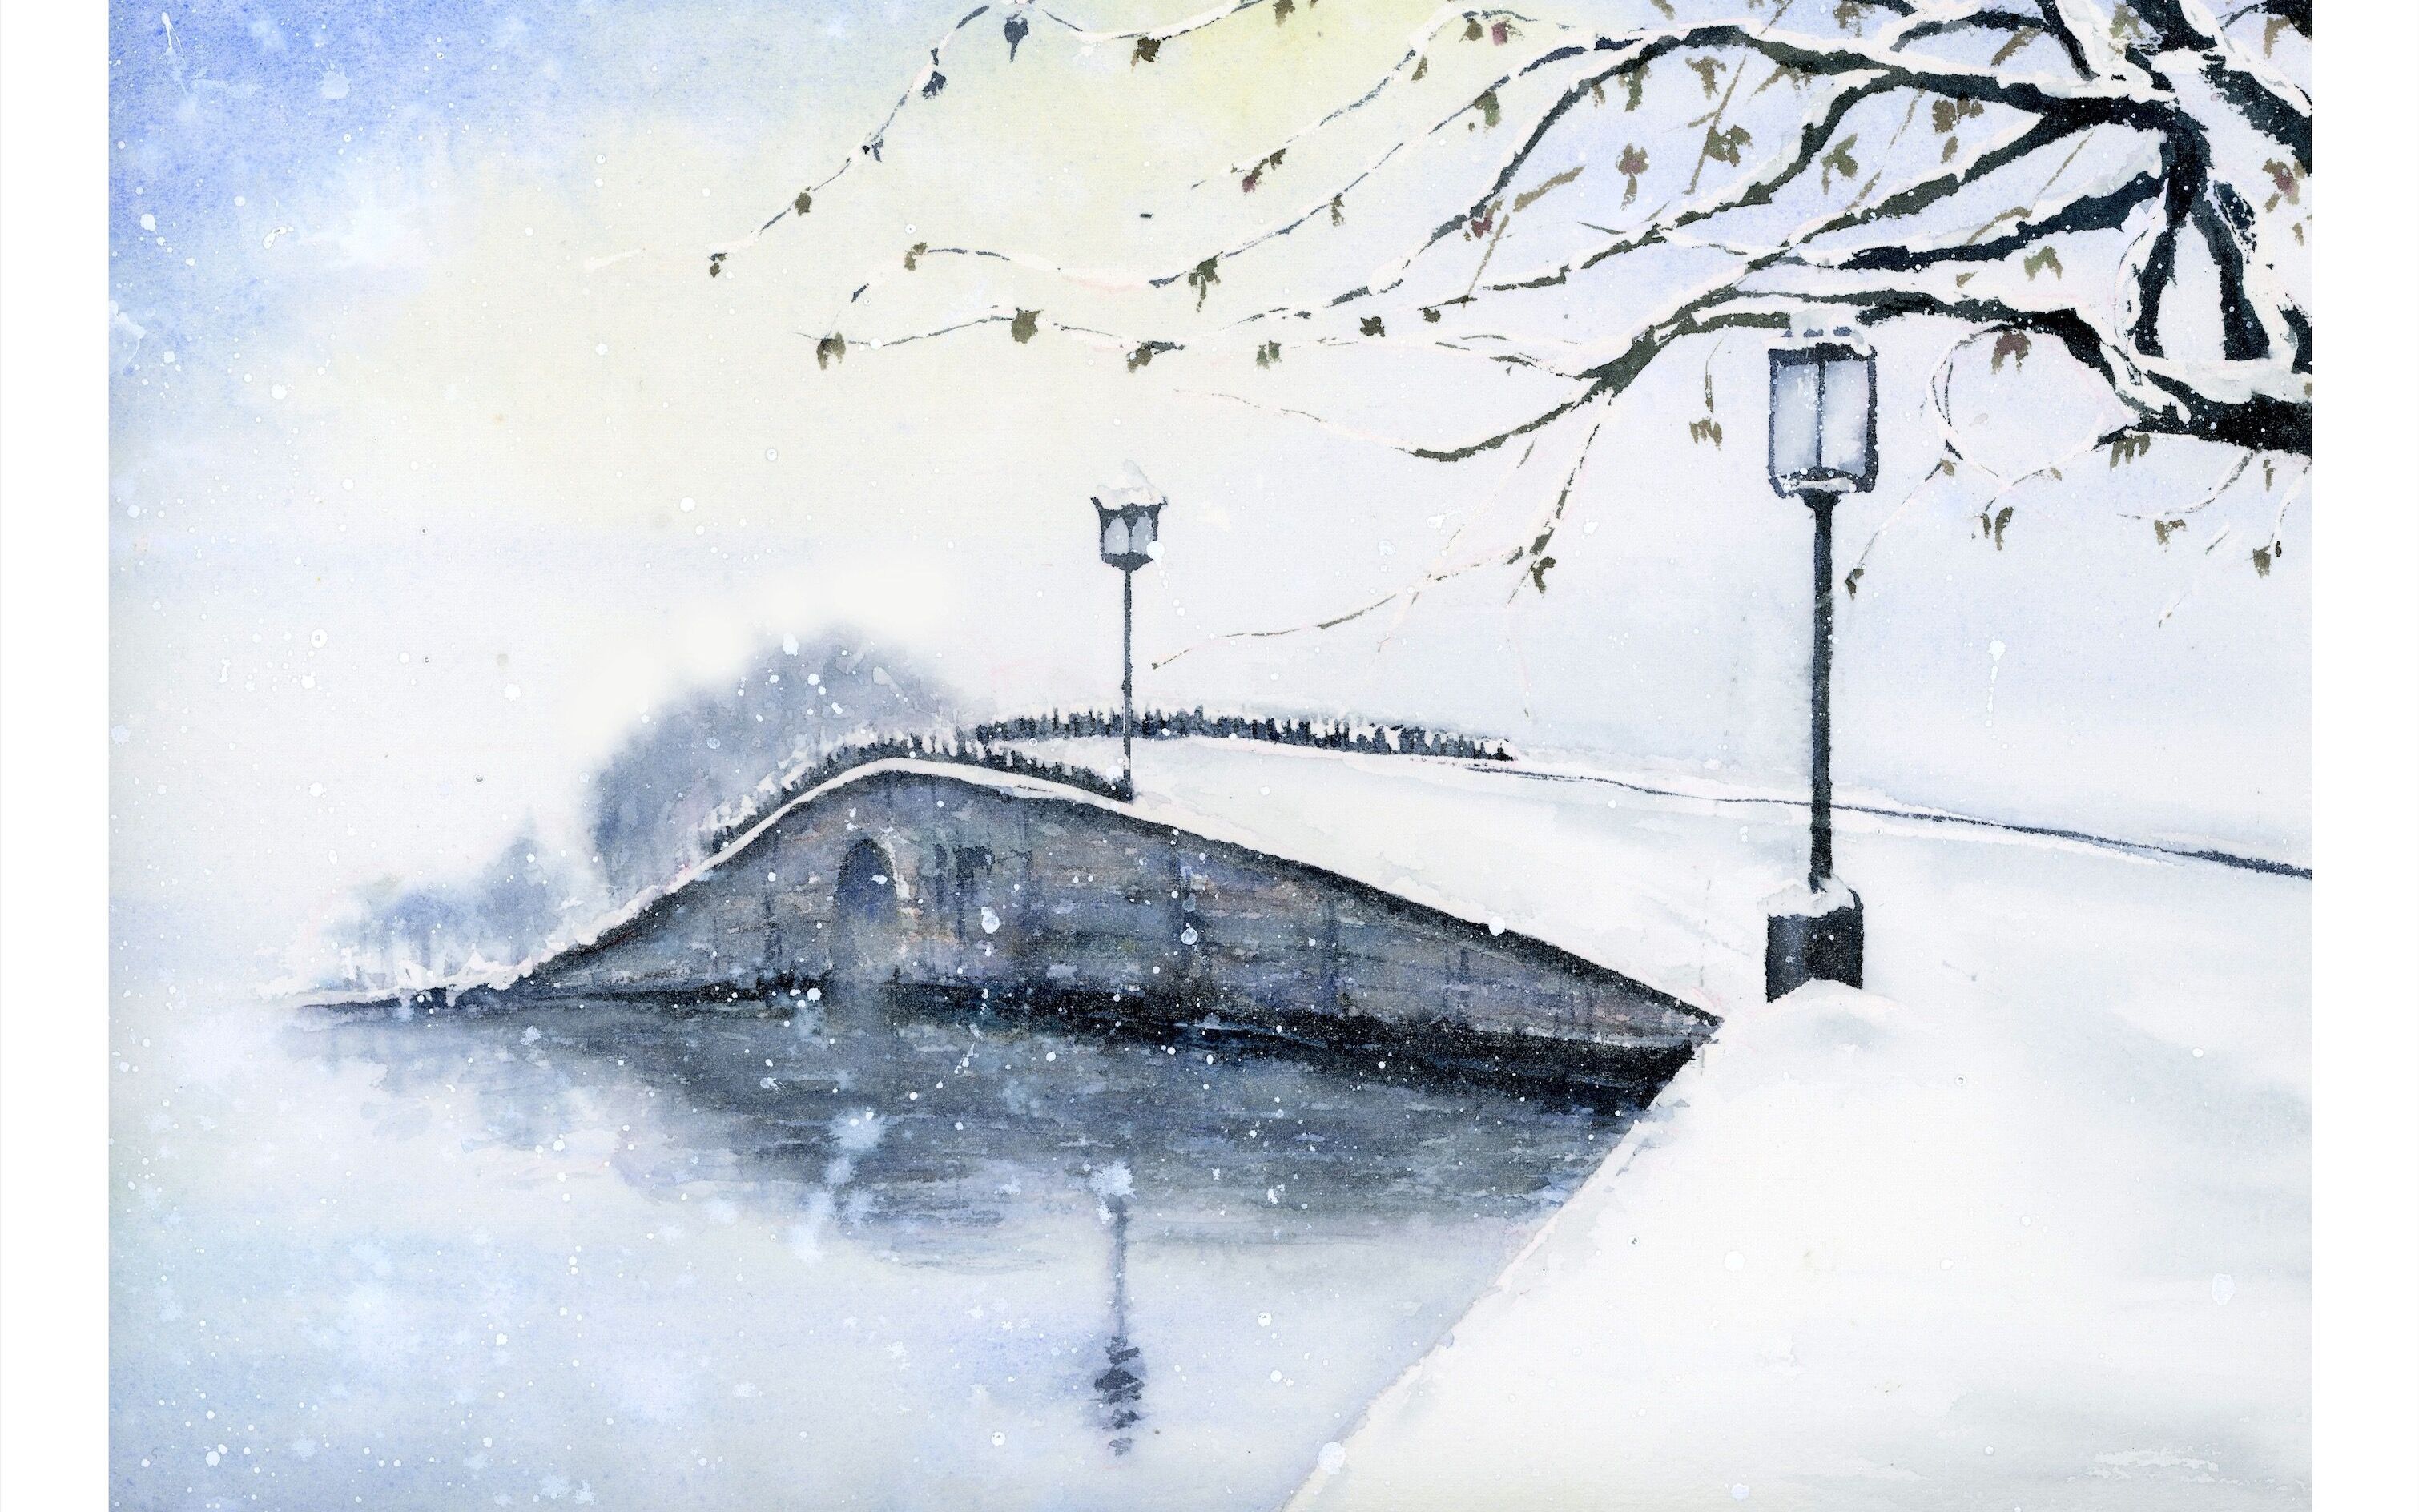 【水彩风景】断桥残雪,雪景过程